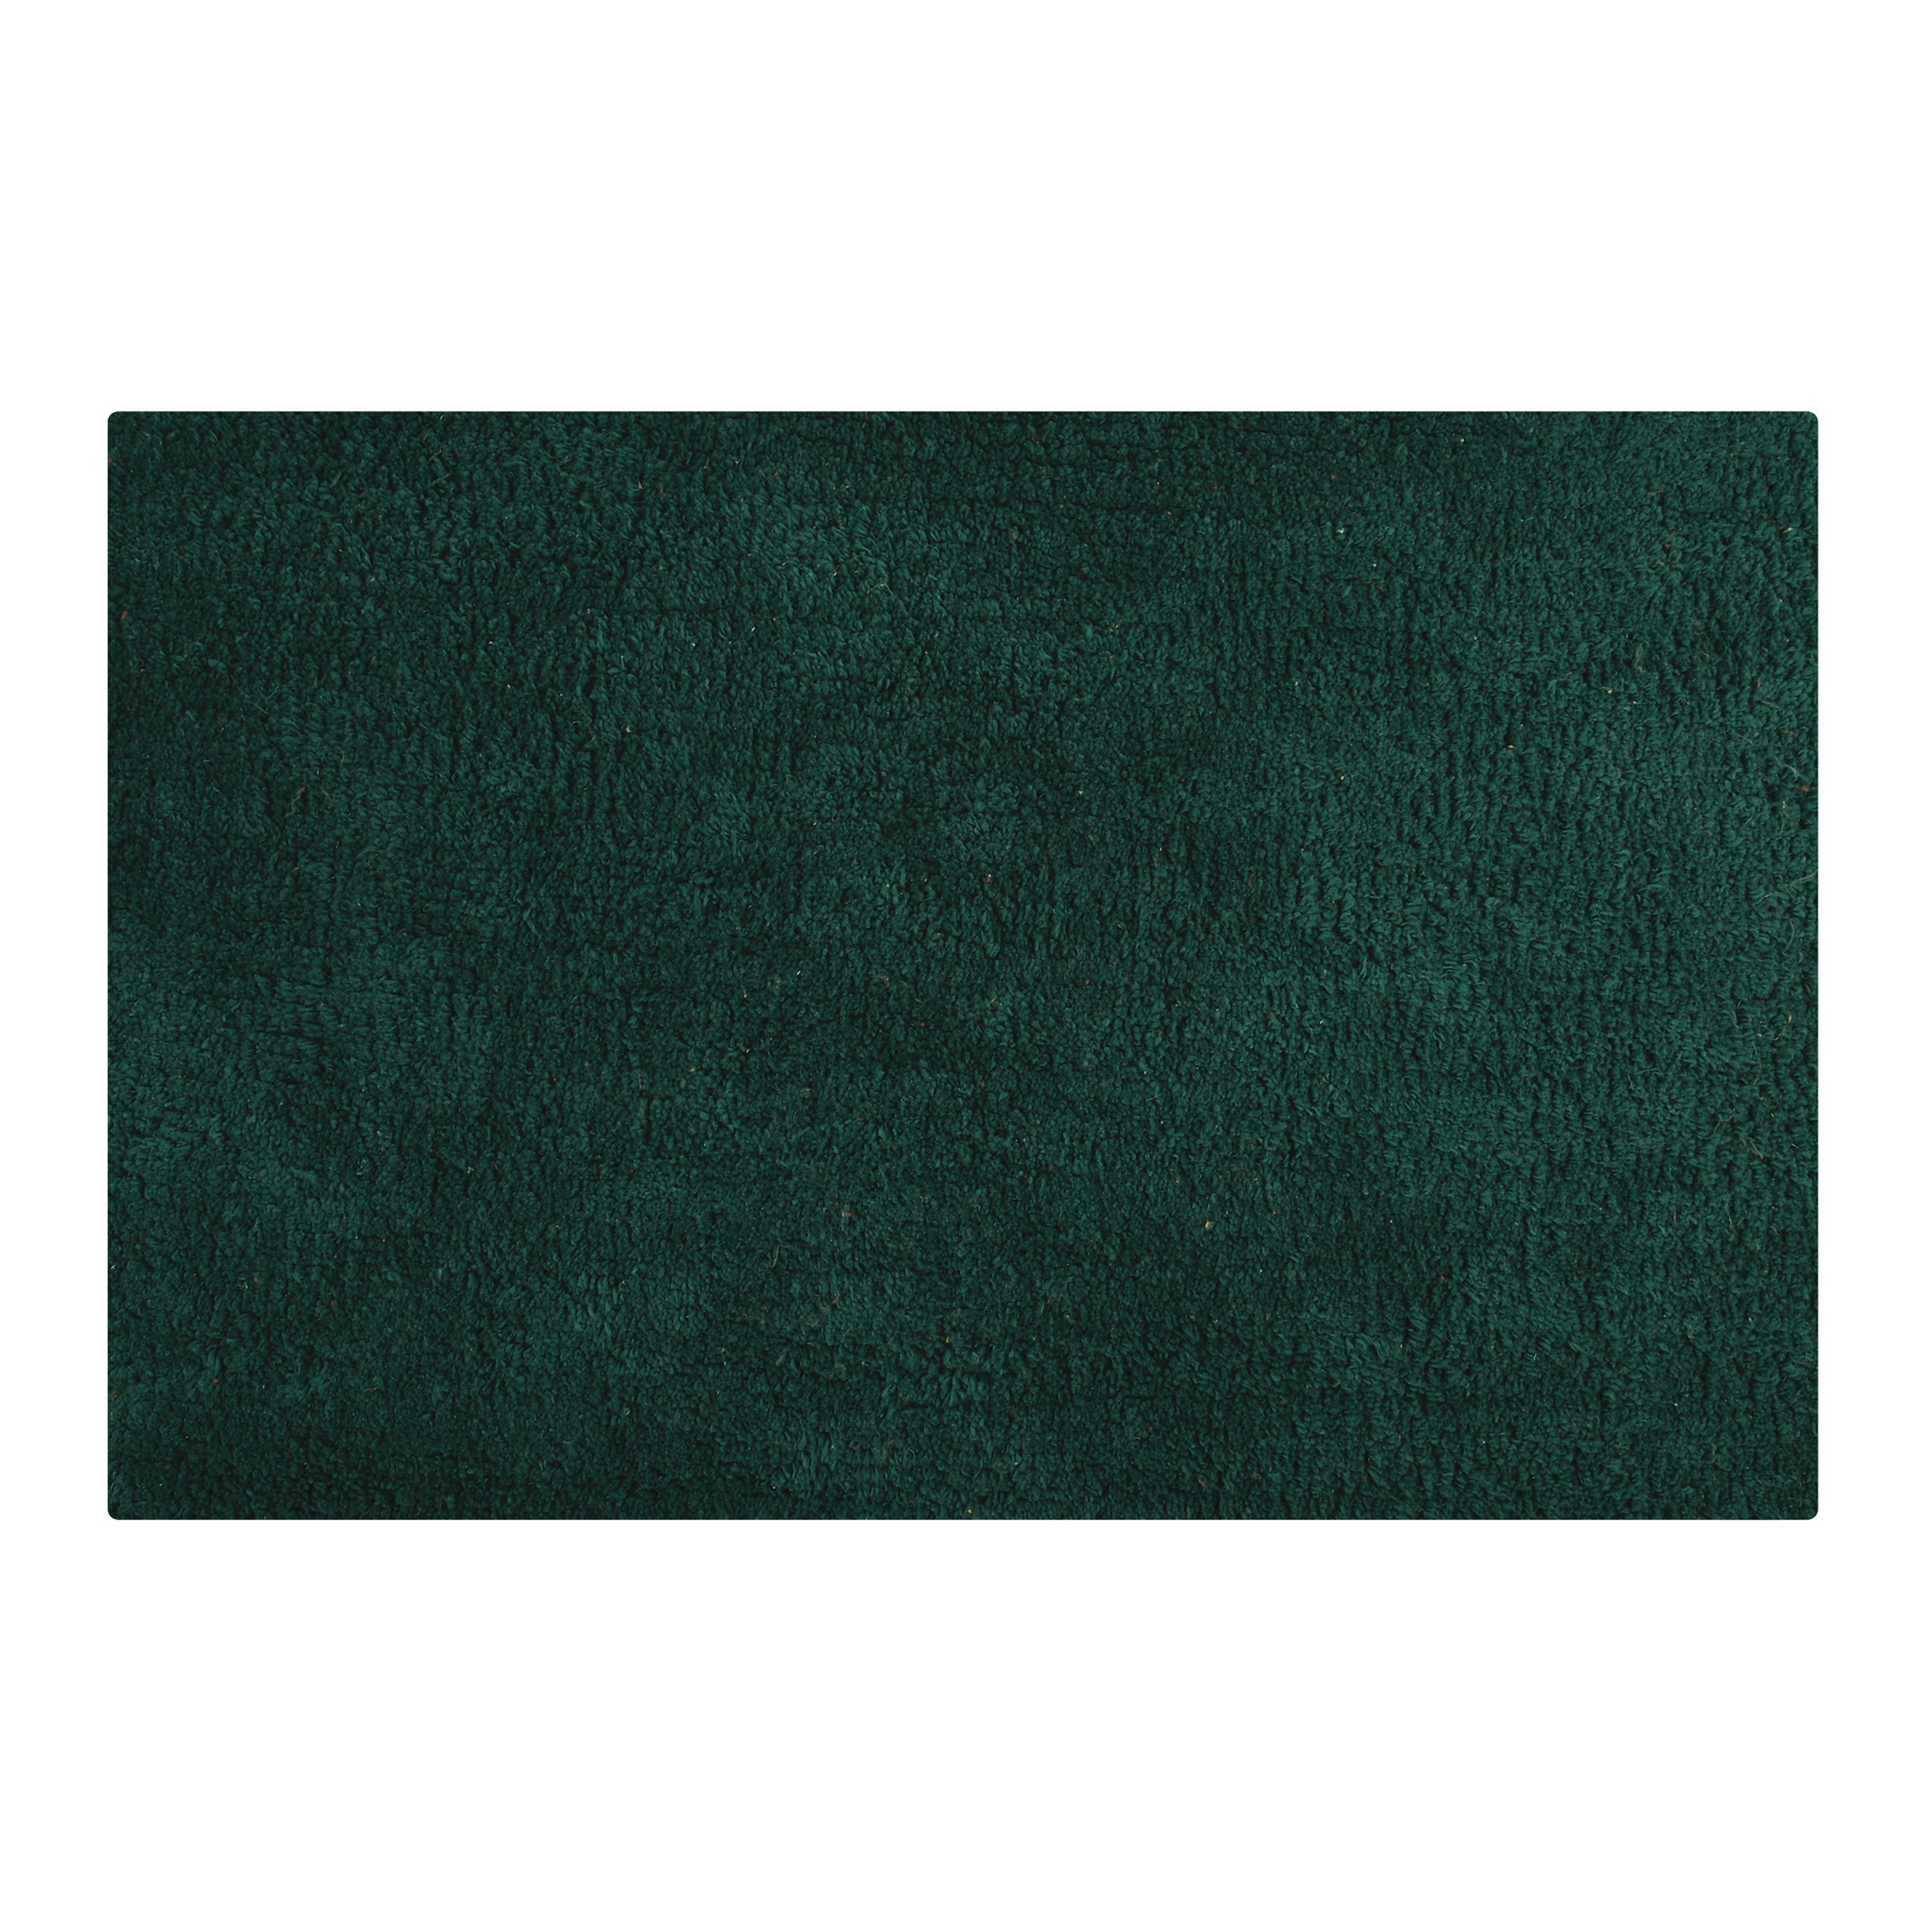 Badkamerkleedje-badmat tapijtje voor op de vloer donkergroen 40 x 60 cm